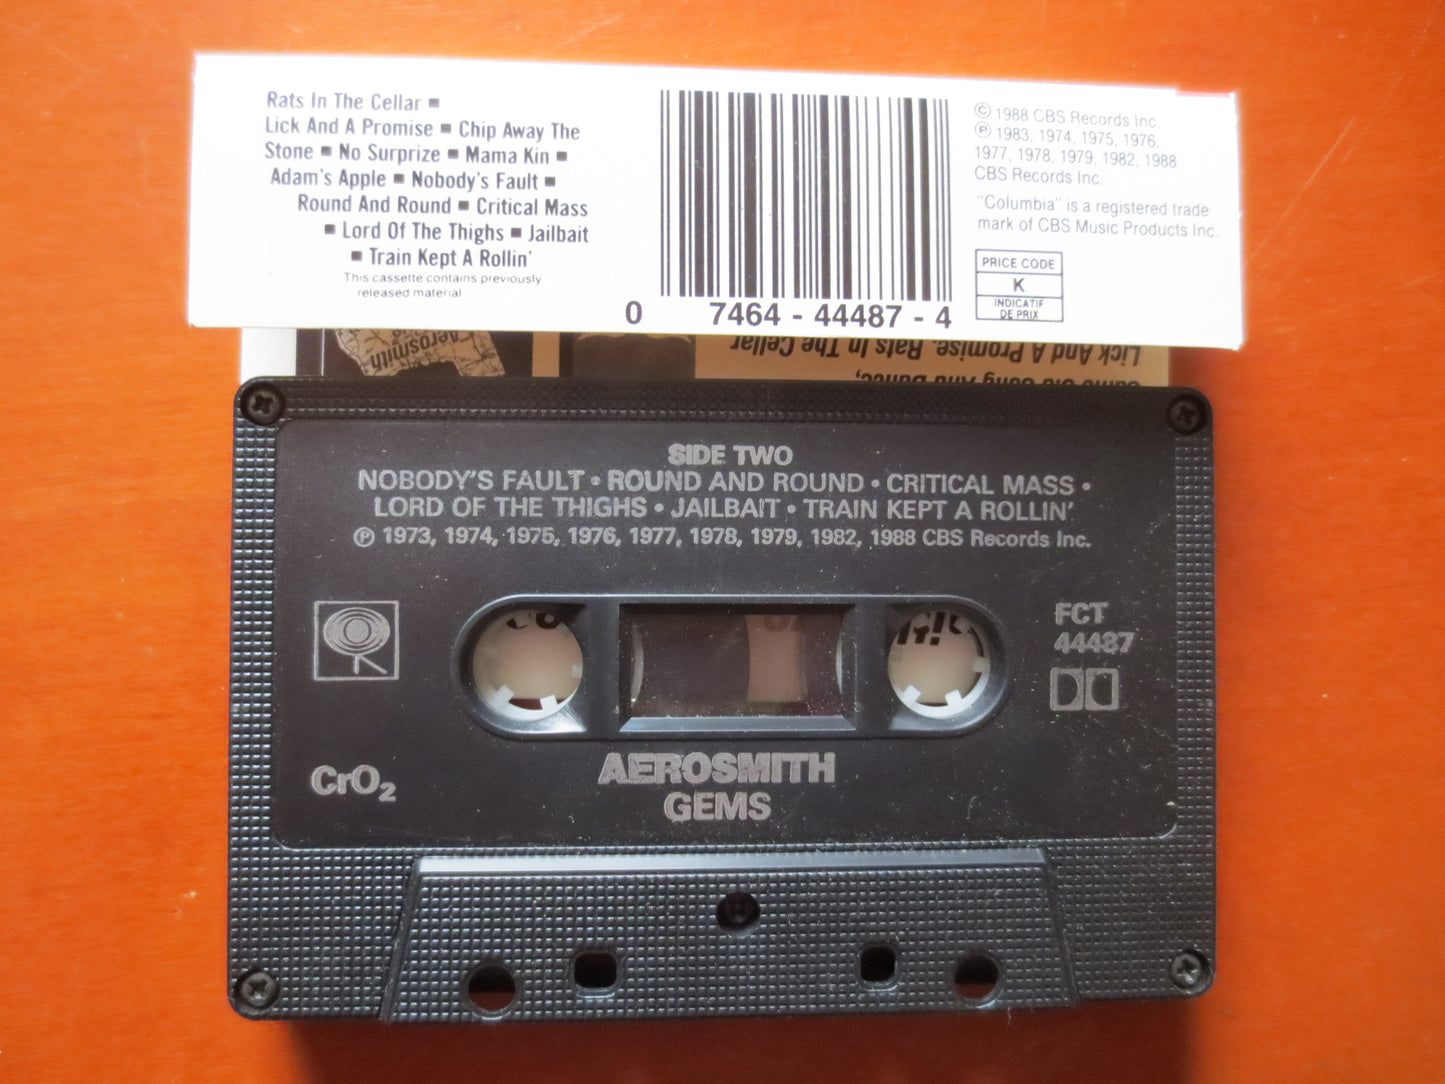 AEROSMITH Tape, GEMS Tape, AEROSMITH Album, Aerosmith Music, Aerosmith Song, Tape Cassette, Rock Cassette, 1988 Cassette